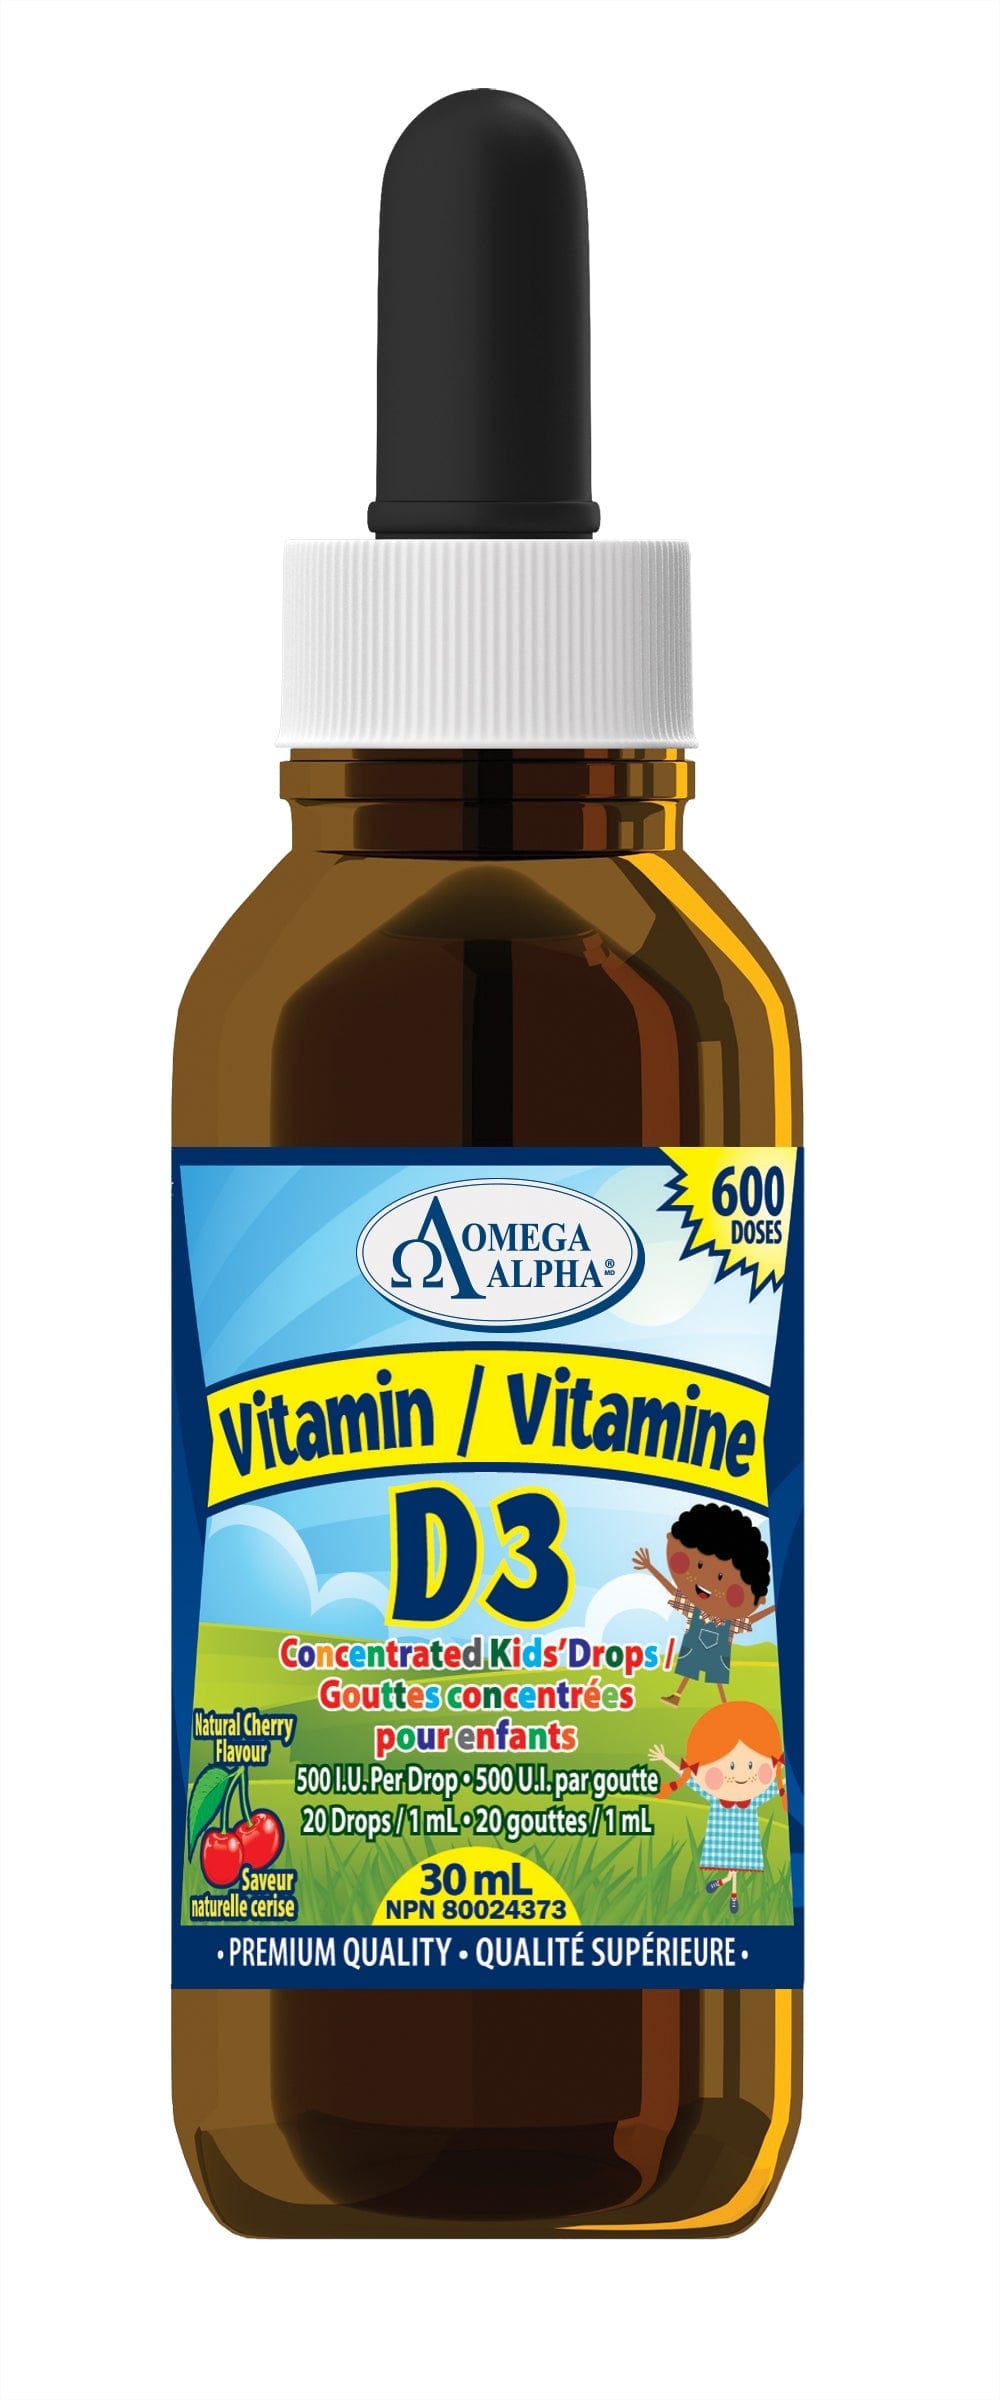 OMÉGA ALPHA PHARMATICAL Suppléments Vitamine D3 kids (500IU) (saveur cerise) 30ml